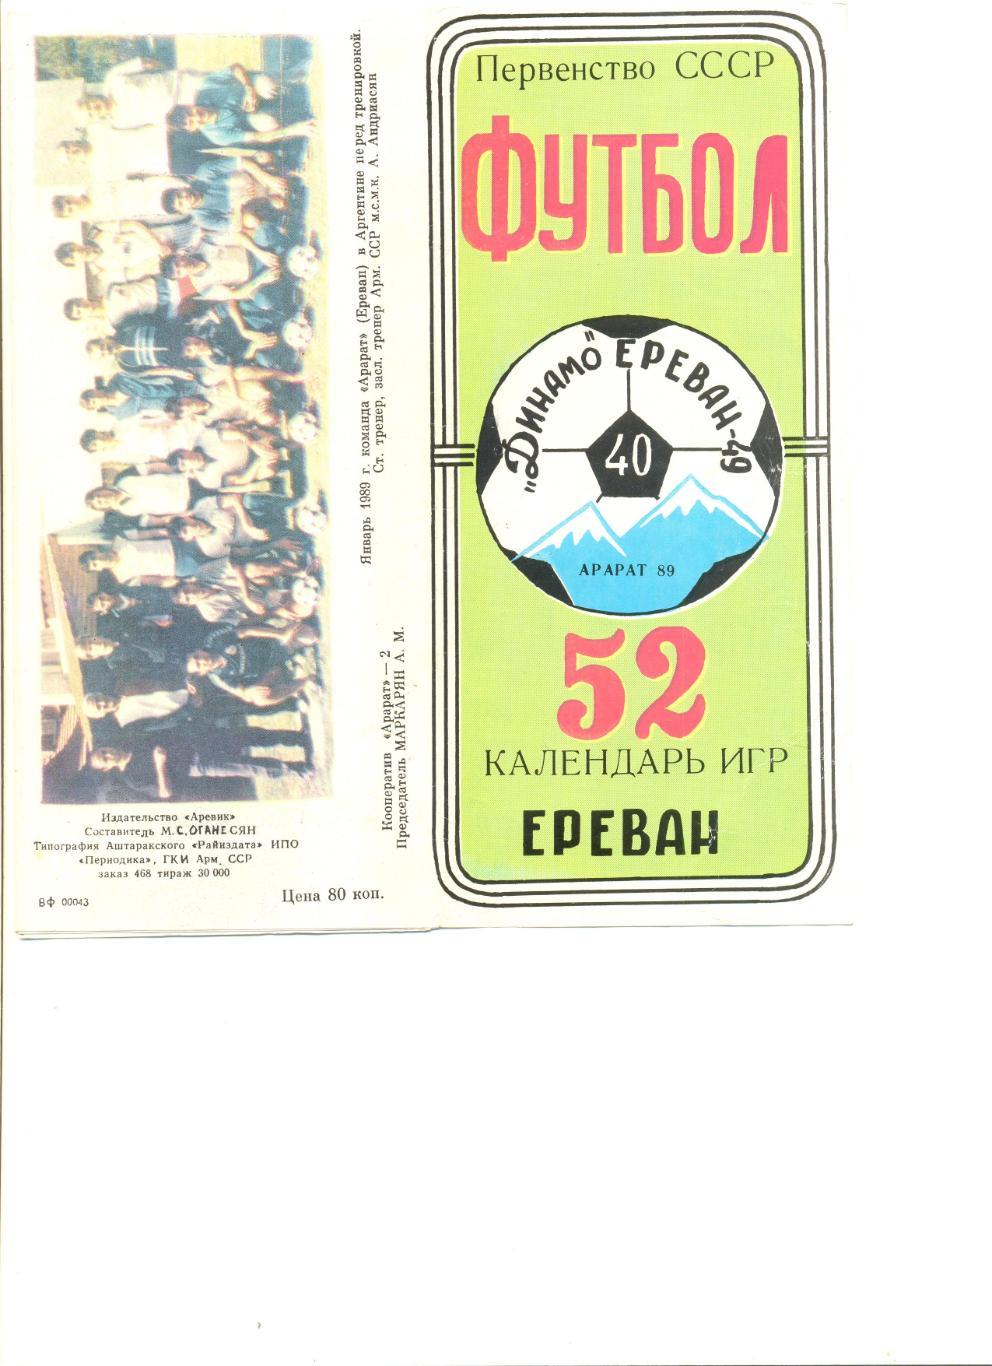 Буклет Ереван-1989 г. (40 лет Динамо Ереван) Фото игроков 1949,1973 и 1989 г.г.